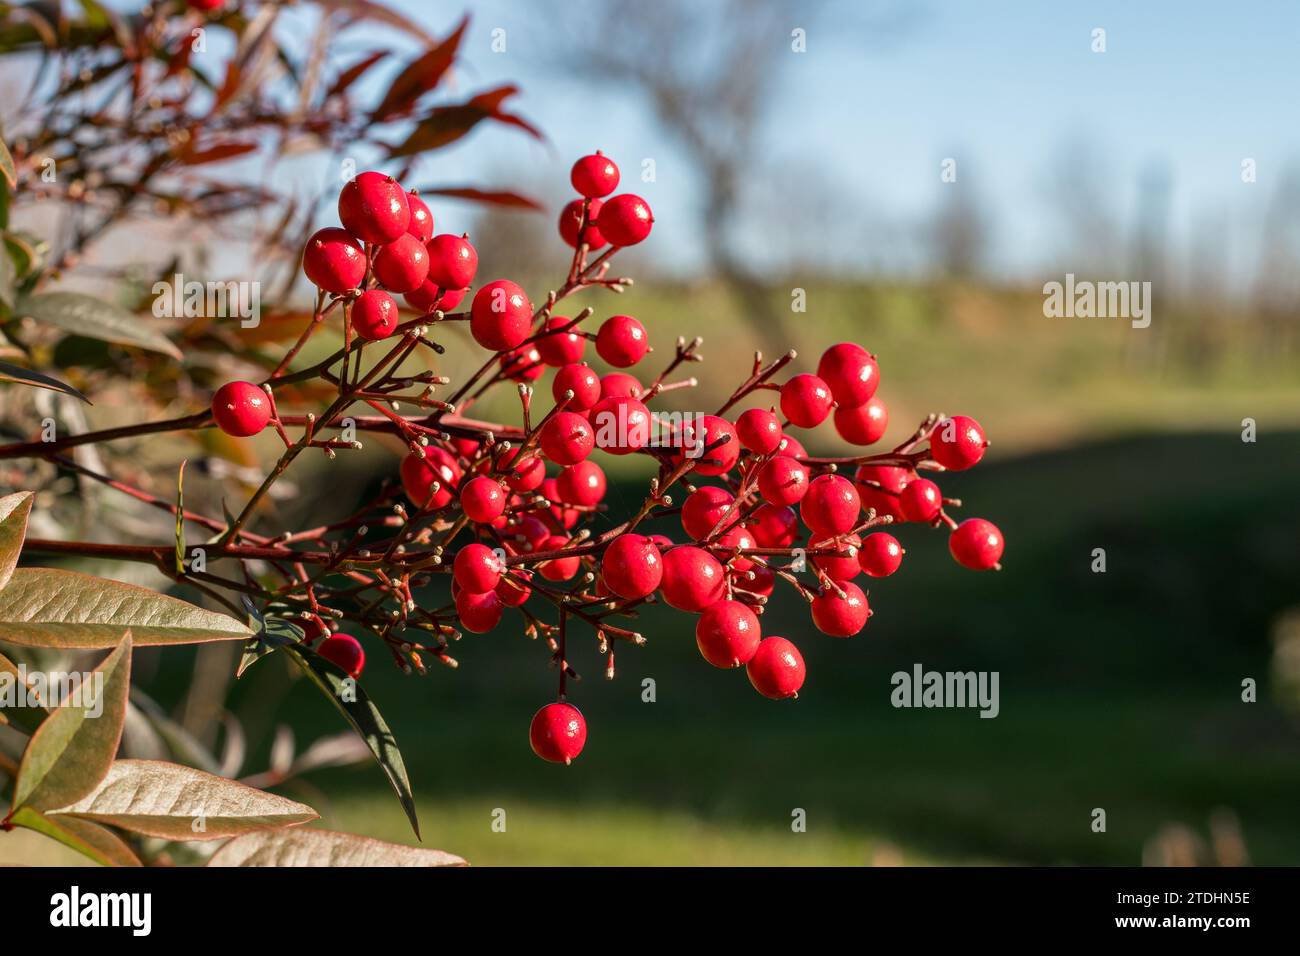 Frutti rossi rotondi immagini e fotografie stock ad alta risoluzione - Alamy